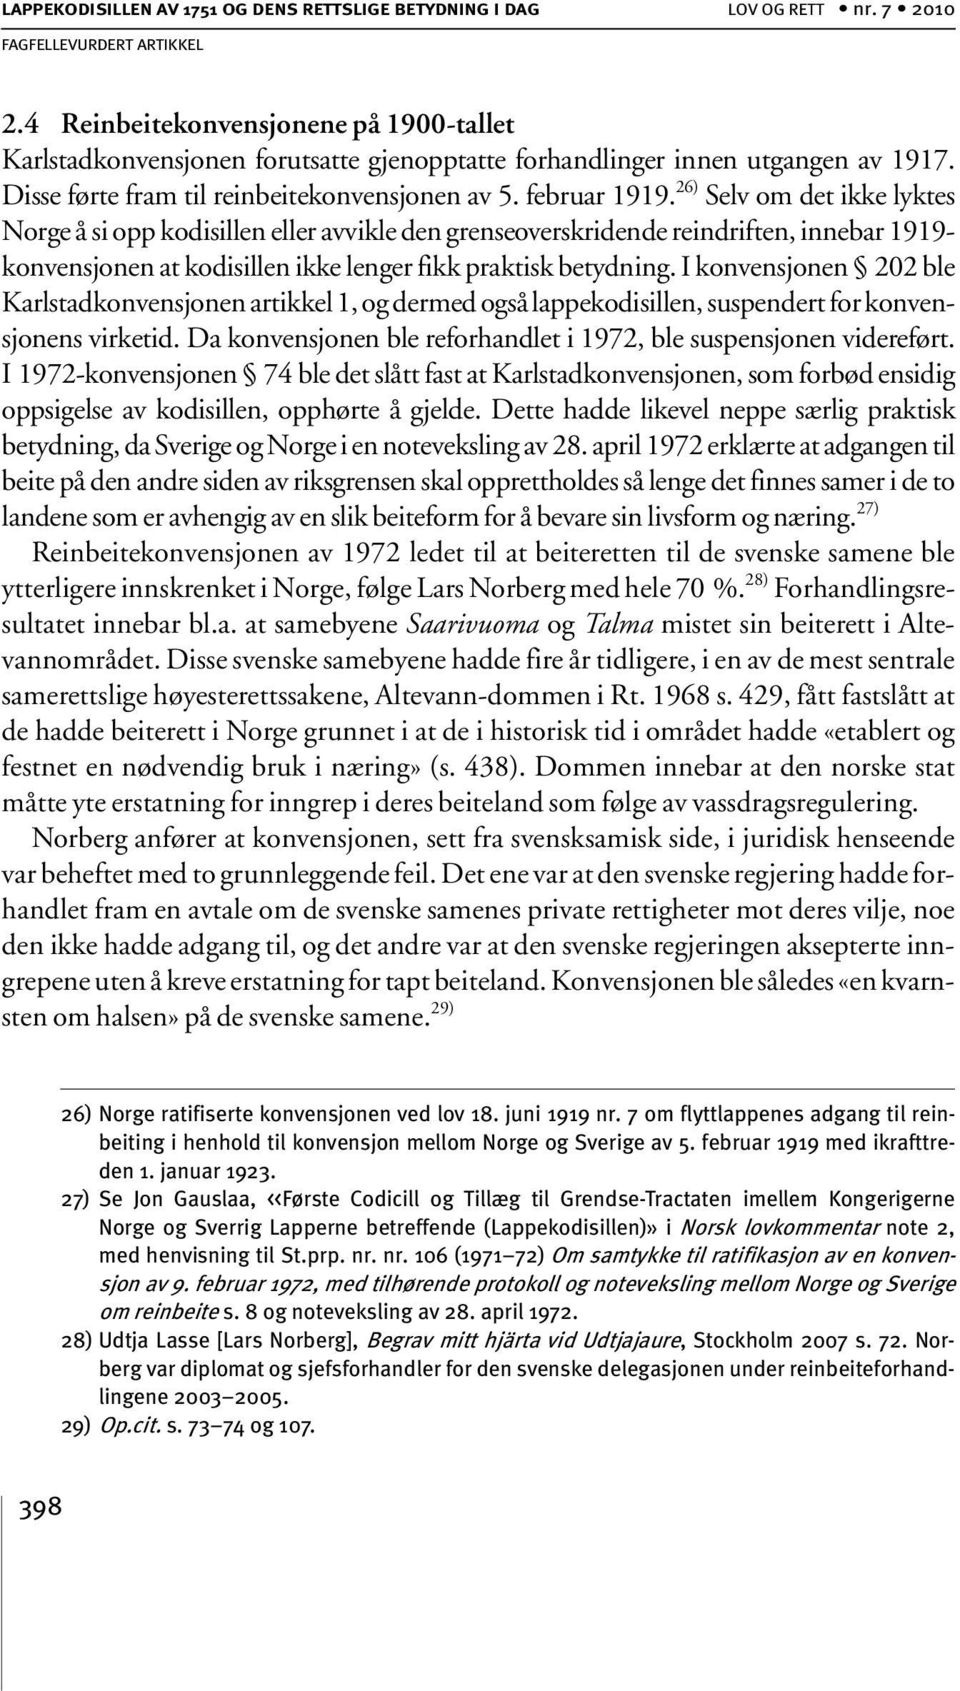 26) Selv om det ikke lyktes Norge å si opp kodisillen eller avvikle den grenseoverskridende reindriften, innebar 1919- konvensjonen at kodisillen ikke lenger fikk praktisk betydning.